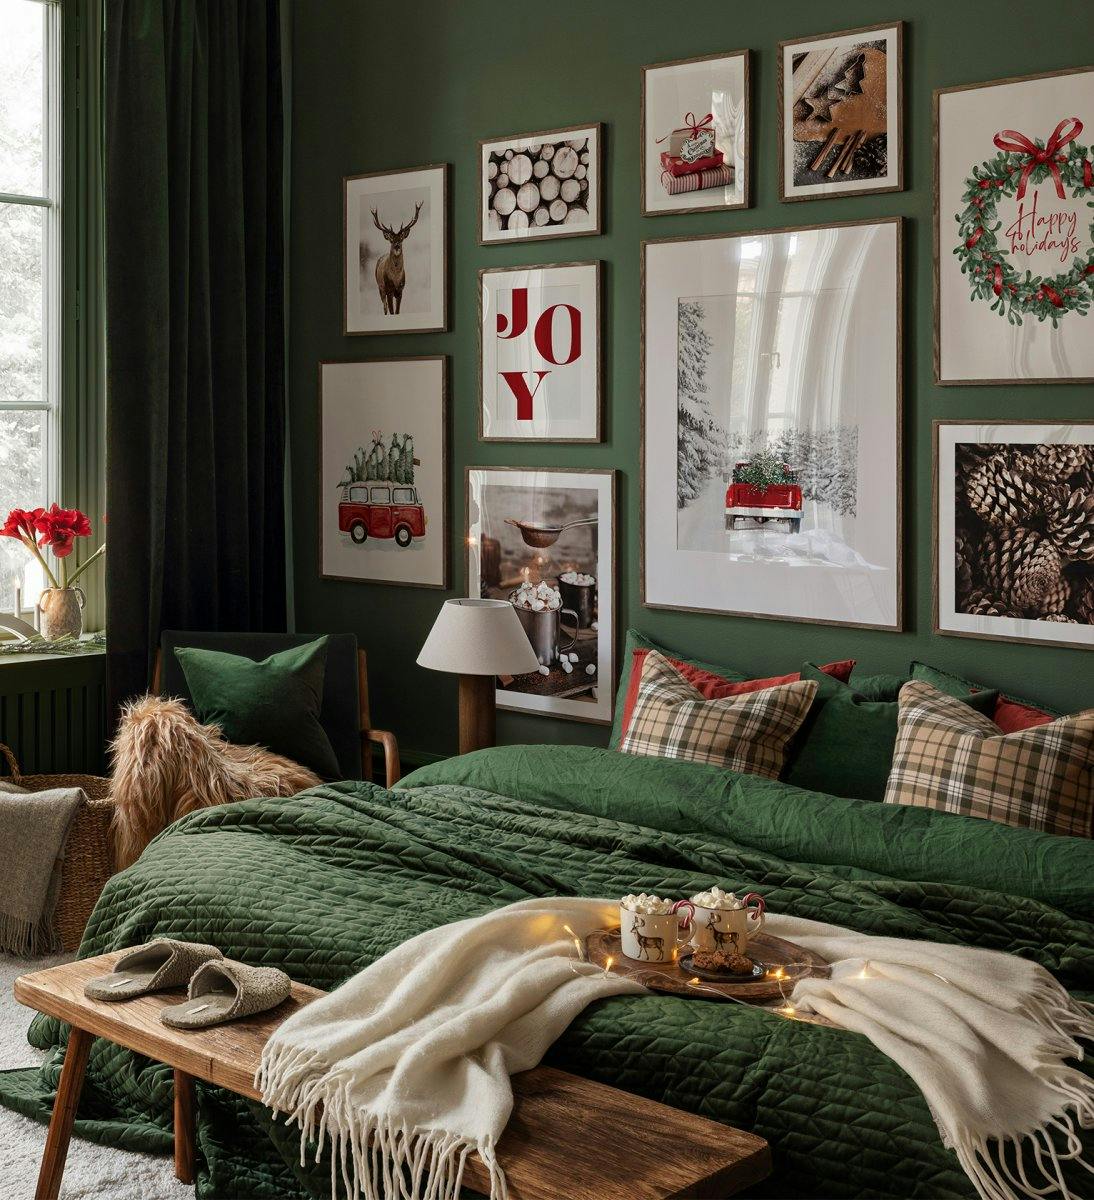 Vánoční galerijní stěna s červenými a zelenými citáty, fotografiemi a ilustracemi v tmavých dubových rámech do ložnice